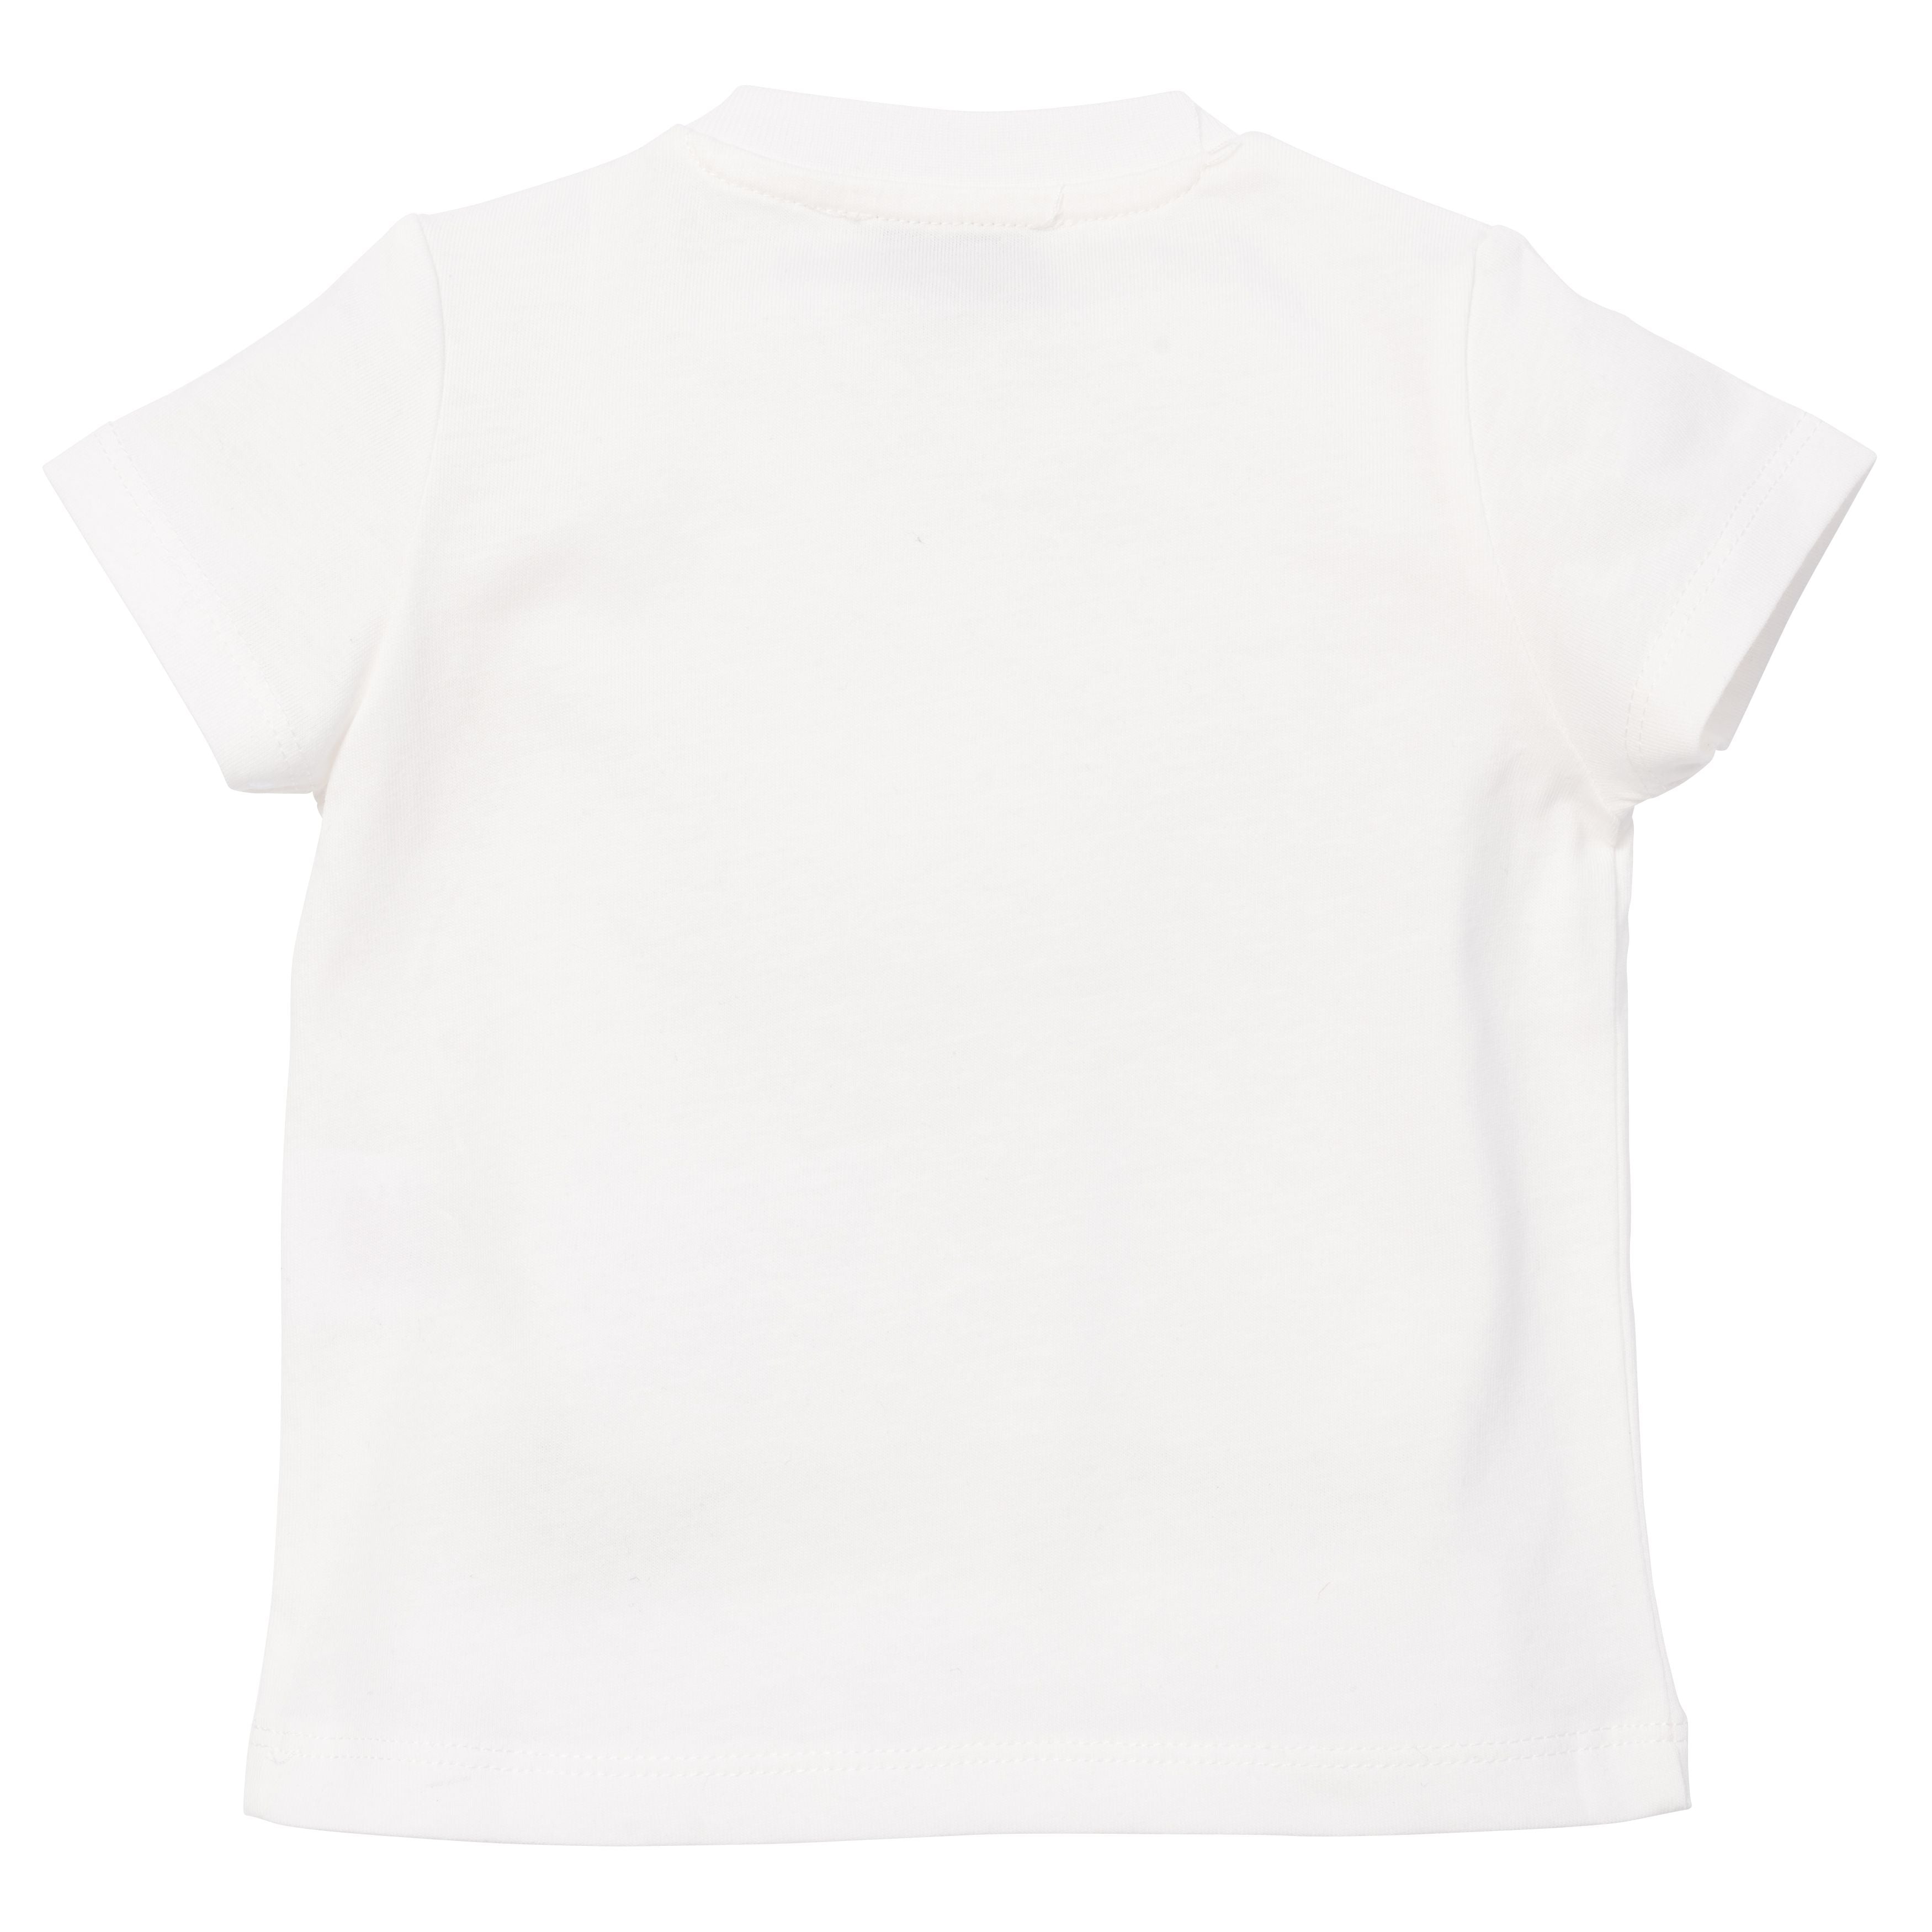 Kenzo Baby Boys White T-Shirt